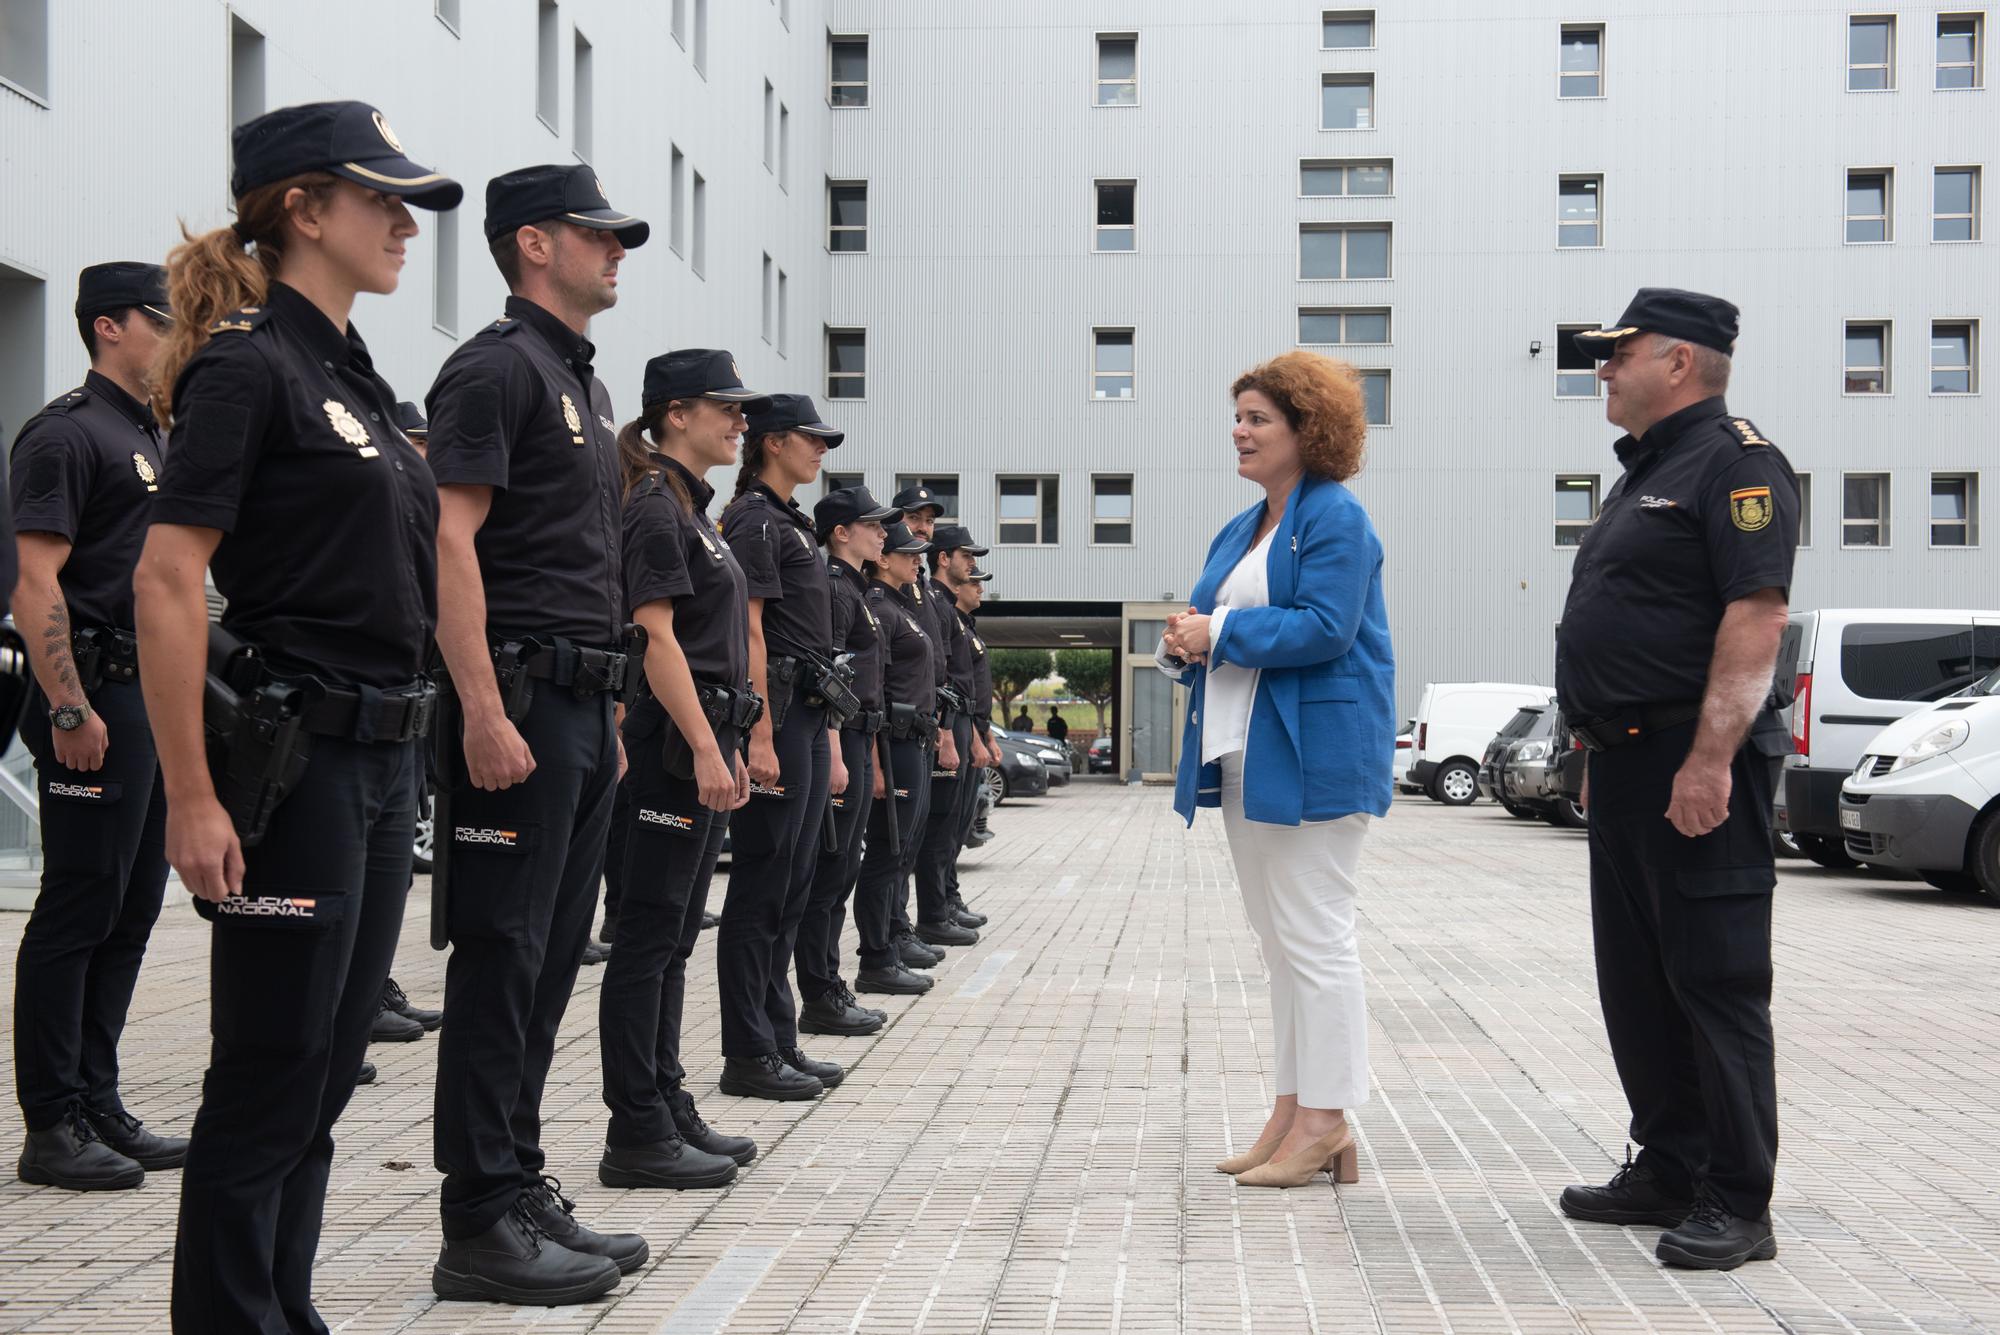 La comisaría de Lonzas de A Coruña recibe a 15 policías nacionales en prácticas